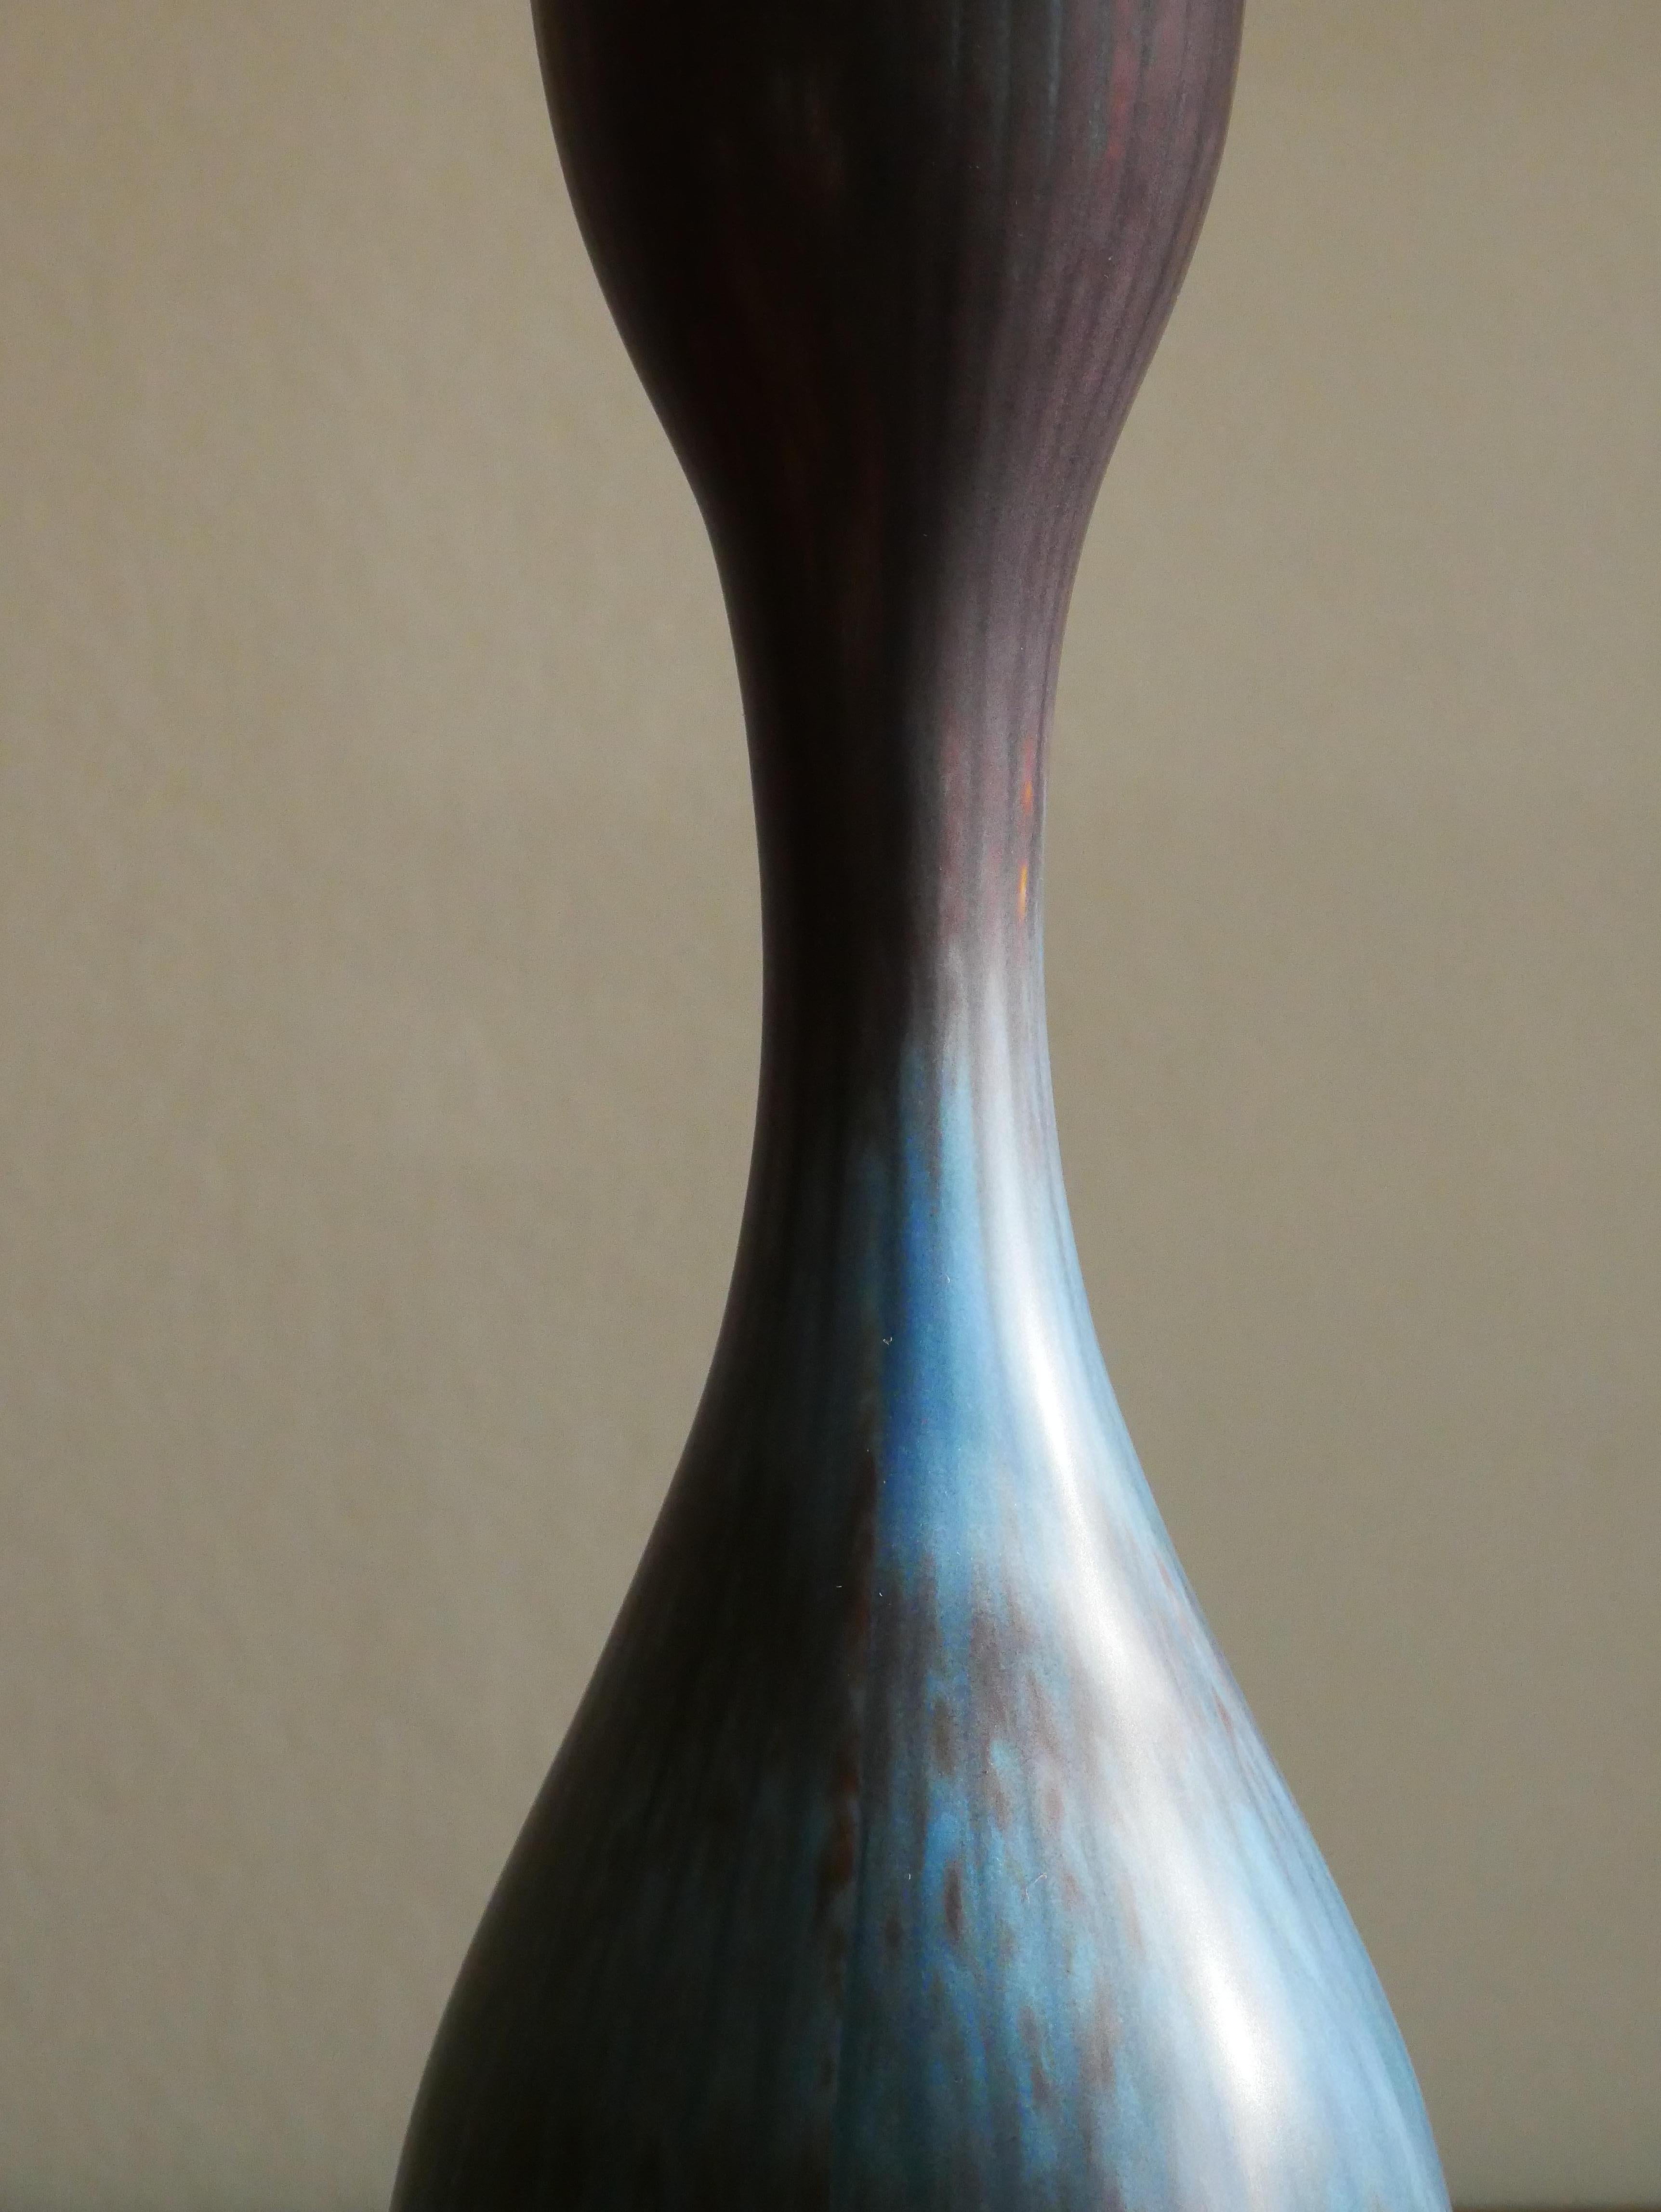 Hand-Crafted Gunnar Nylund Rörstrand Big Vase 1950s Sweden For Sale